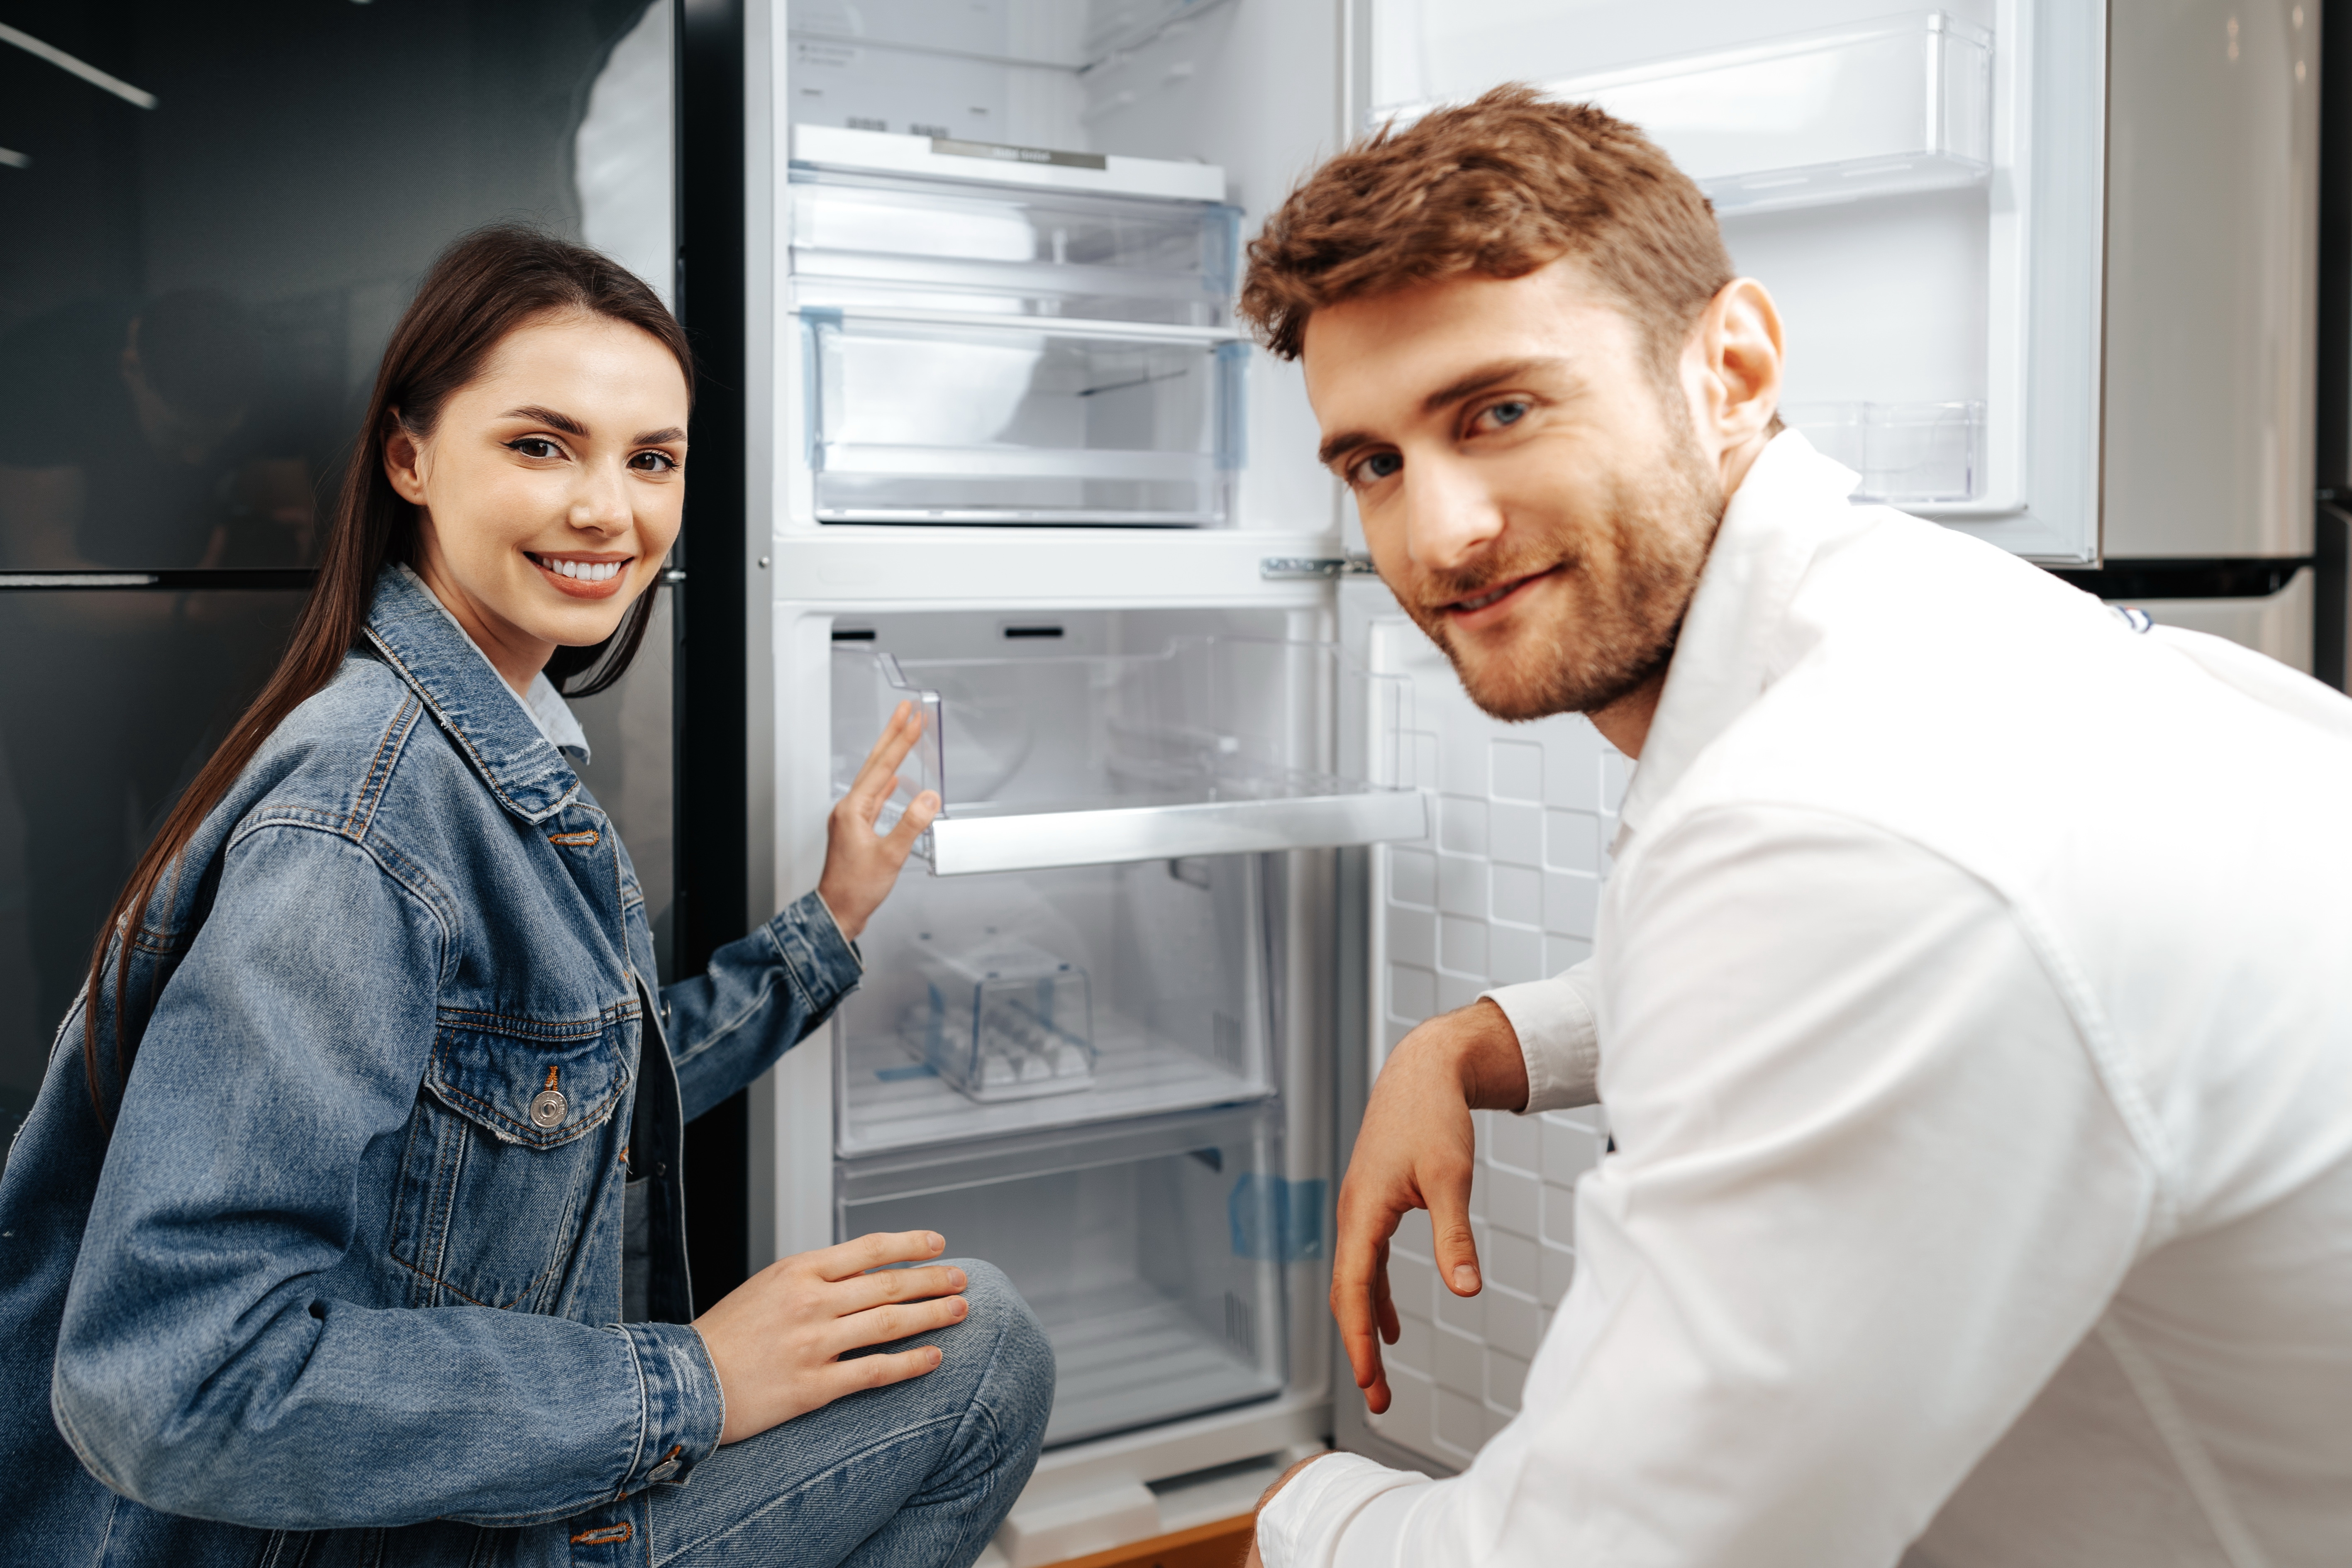 Teszt: Melyik hűtőszekrény lett a legjobb? - Blikk